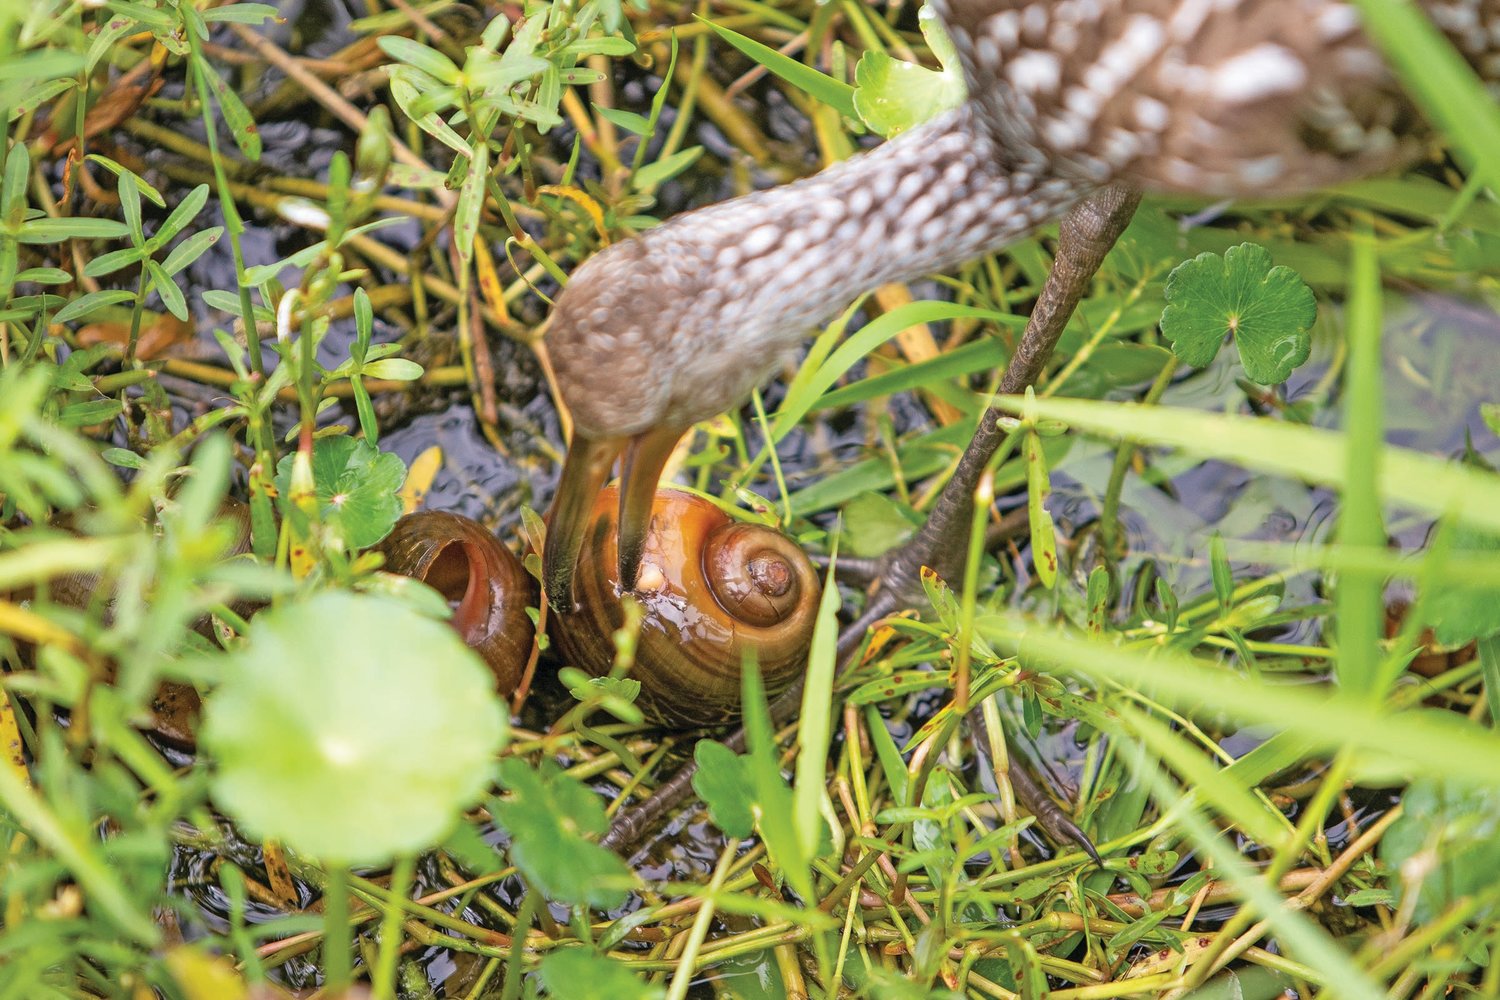 A Limpkin eating an apple snail.